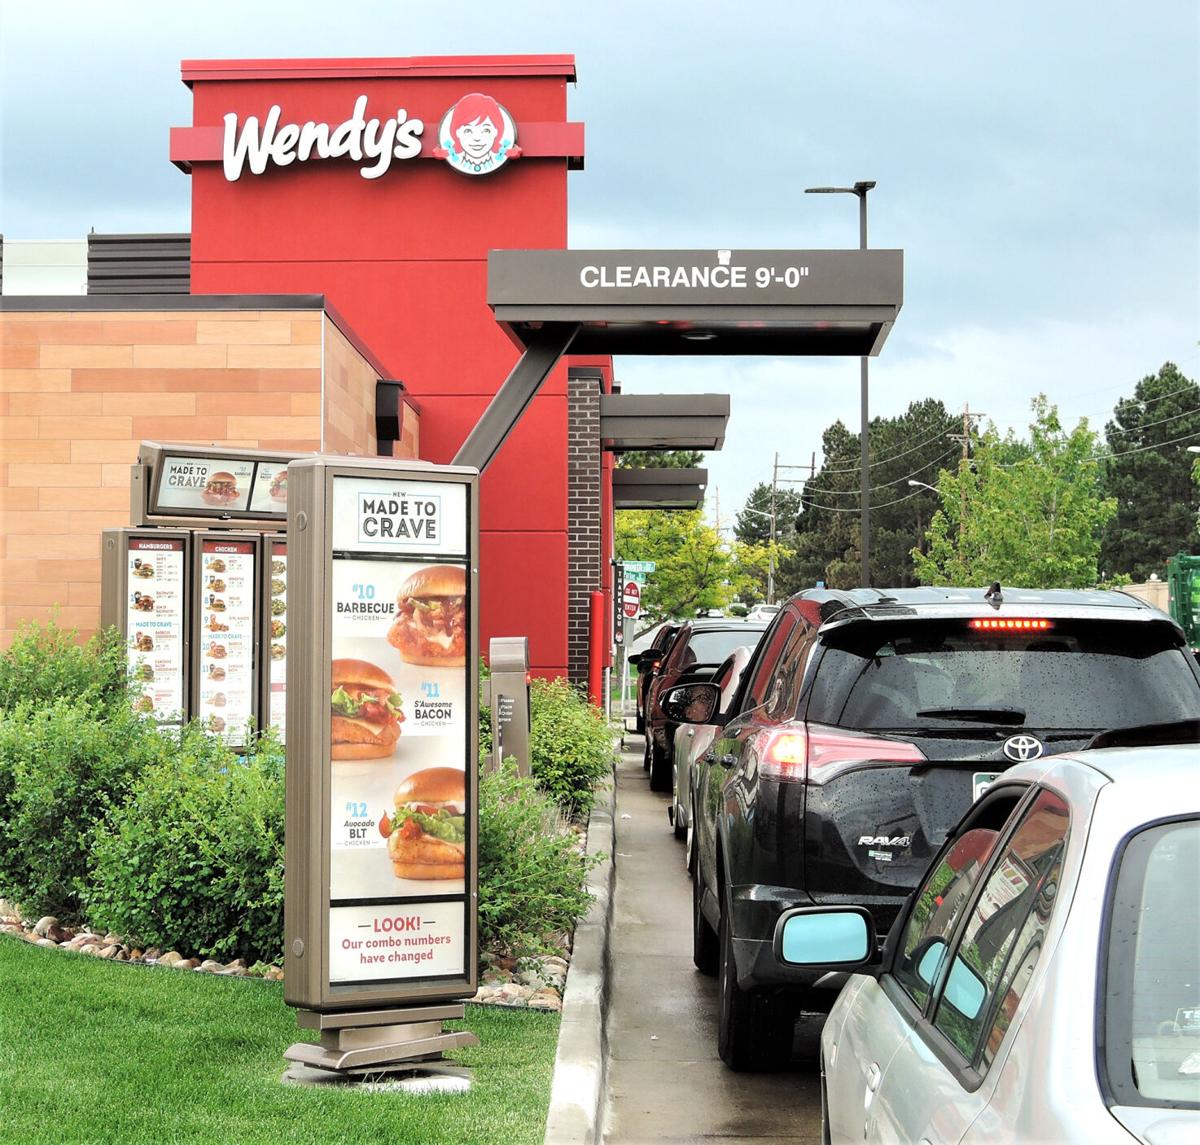 La cadena de fastfood Wendy's compra suports d'autoservei a Countermatic